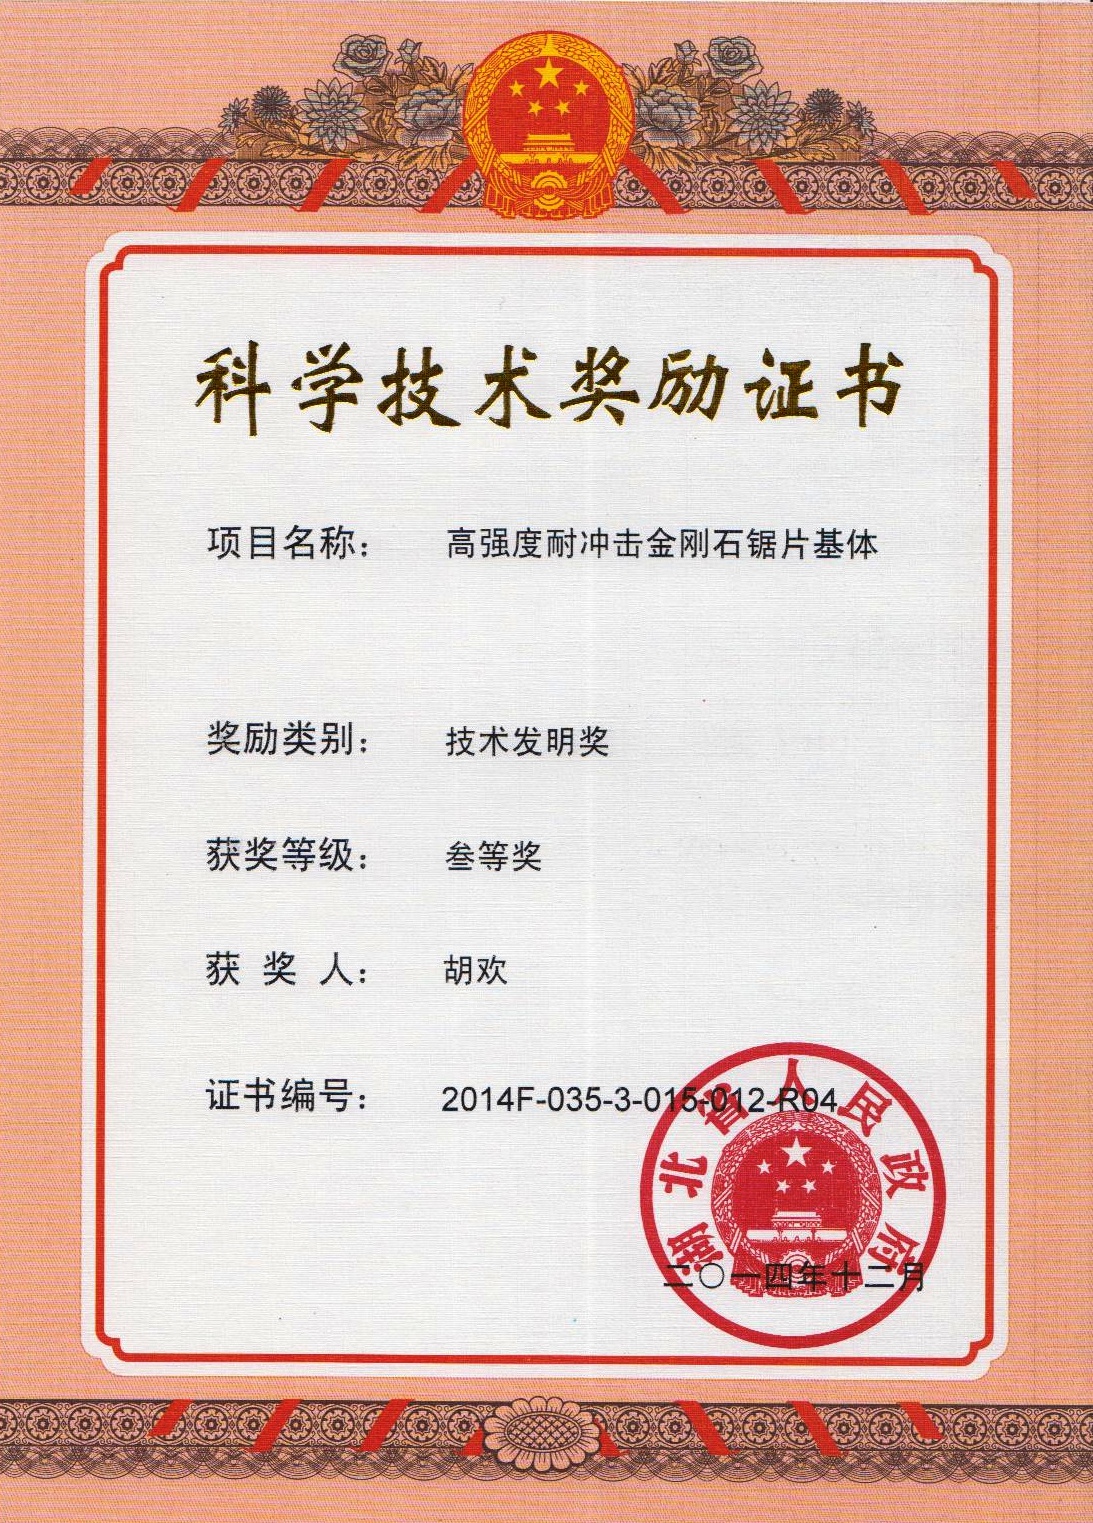 荣誉-2014-2014湖北省科技奖技术发明三等奖-高强度耐冲击金刚石锯片基体